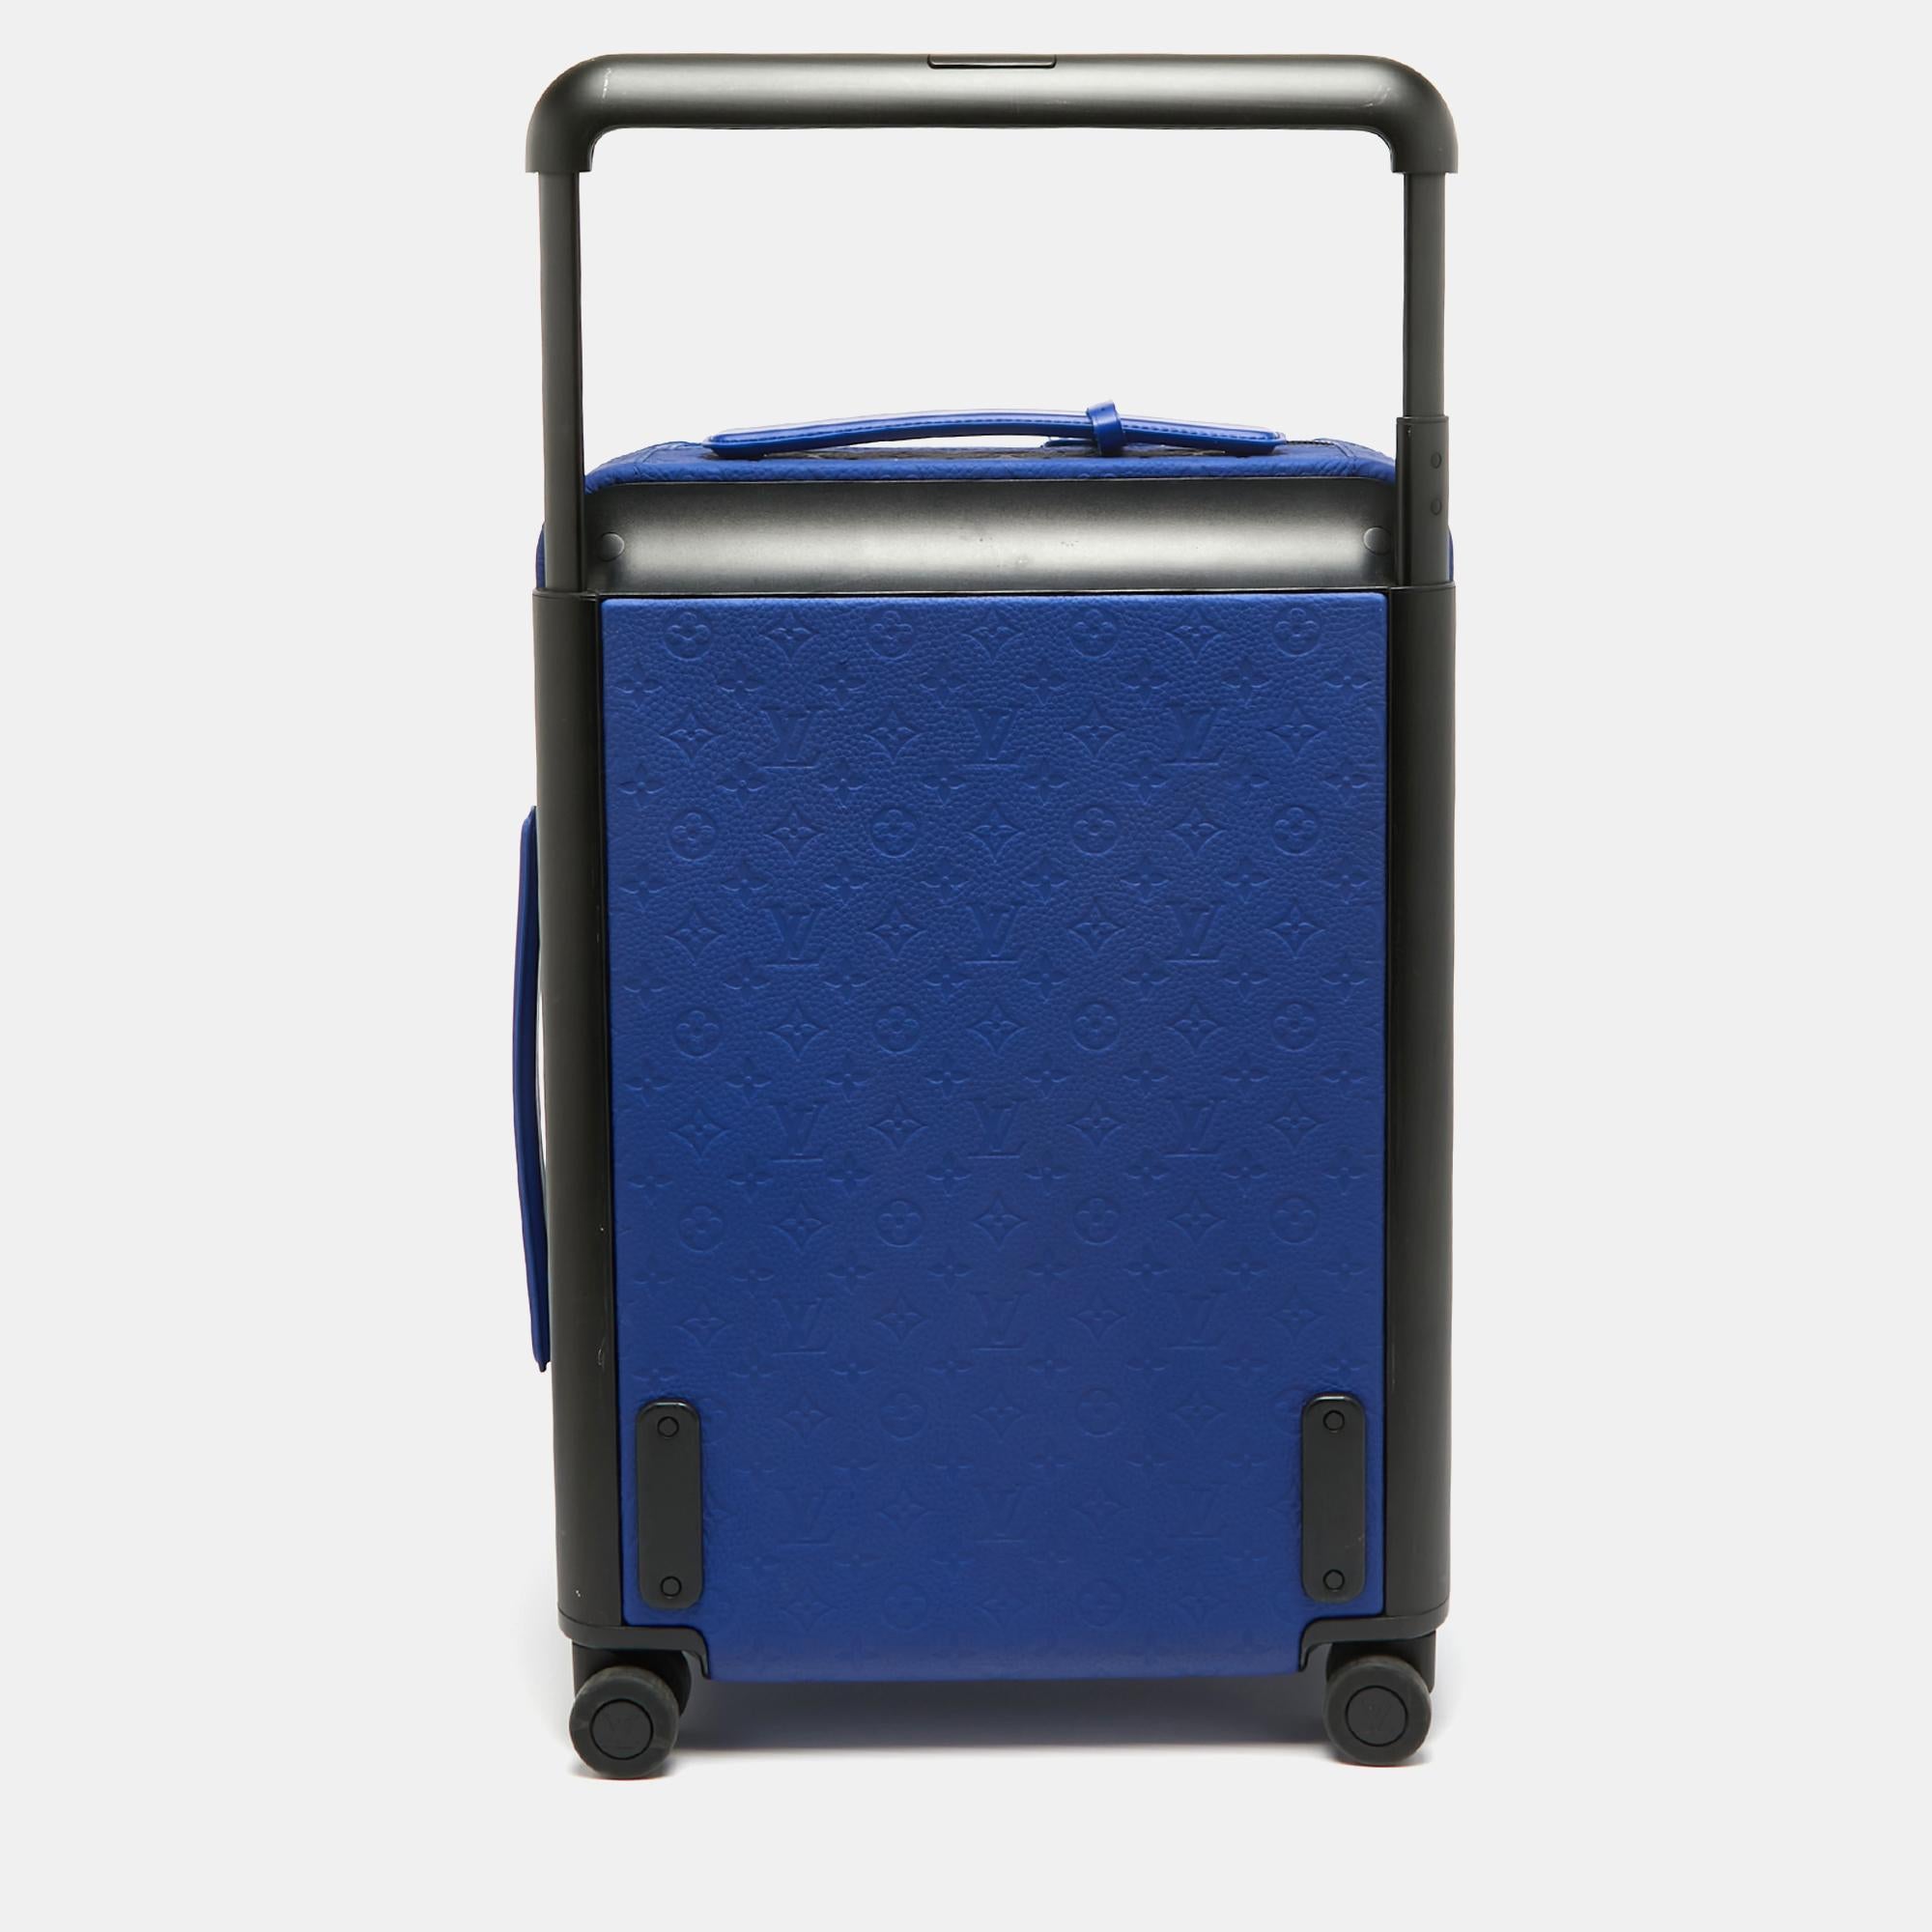 Dieser Koffer, der die legendäre Reisekunst von Louis Vuitton auf elegante Weise weiterführt, ist aus den charakteristischen Materialien gefertigt und besticht durch traditionelle Handwerkskunst und ein innovatives, modernes Design. Leicht, robust